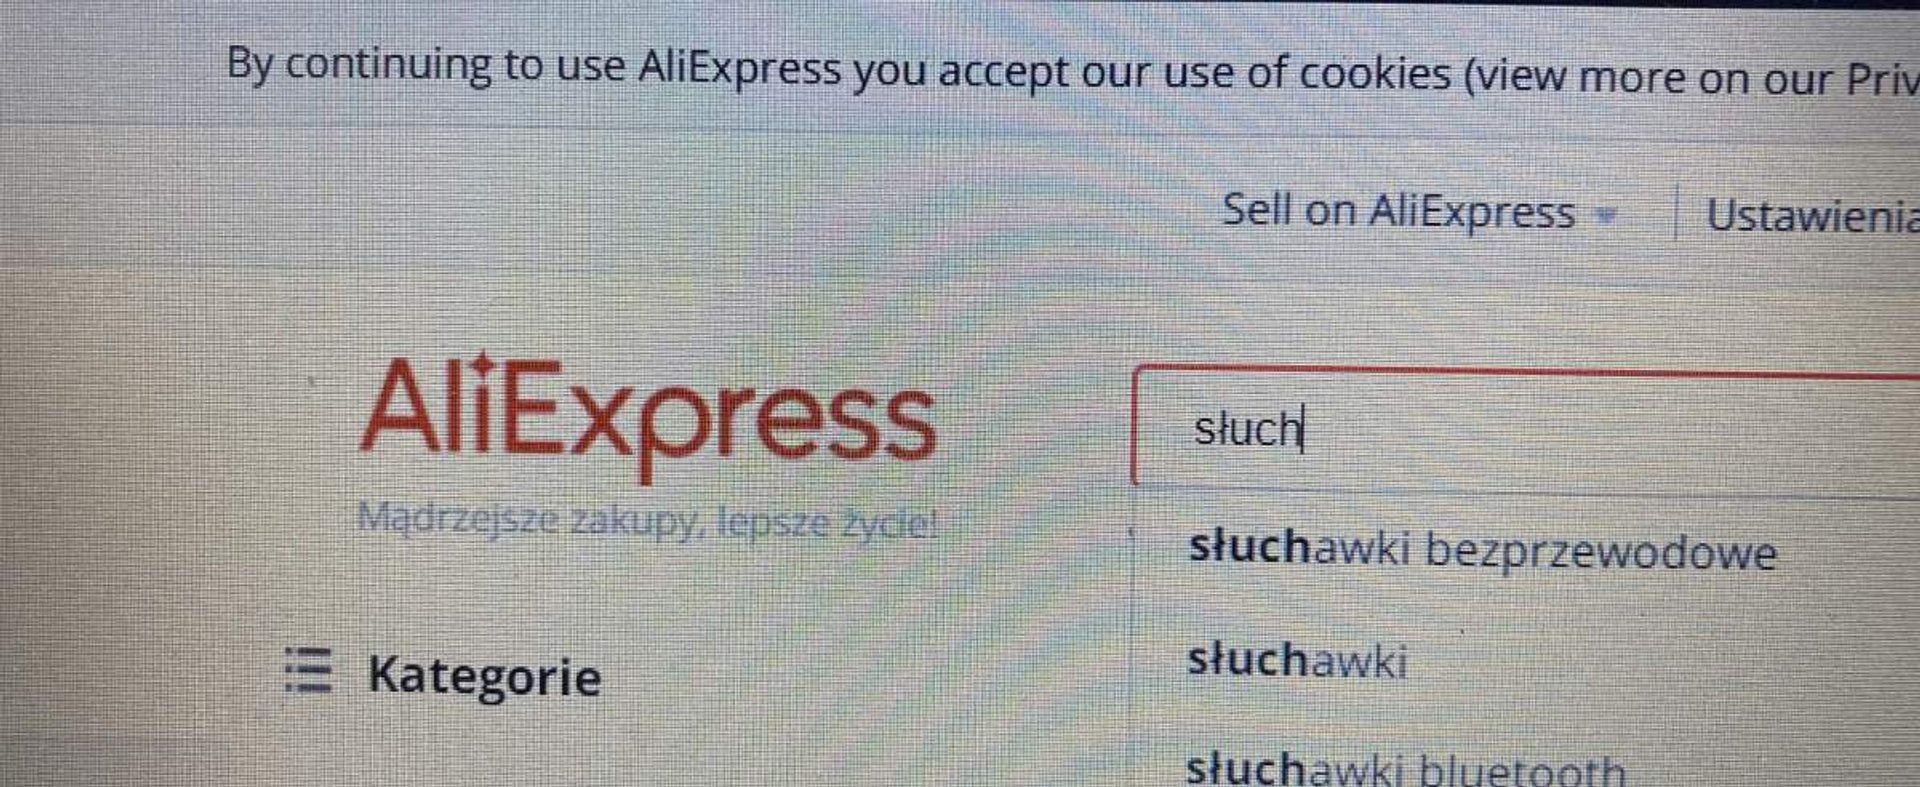 Rząd przyjął zmiany uderzające w AliExpress